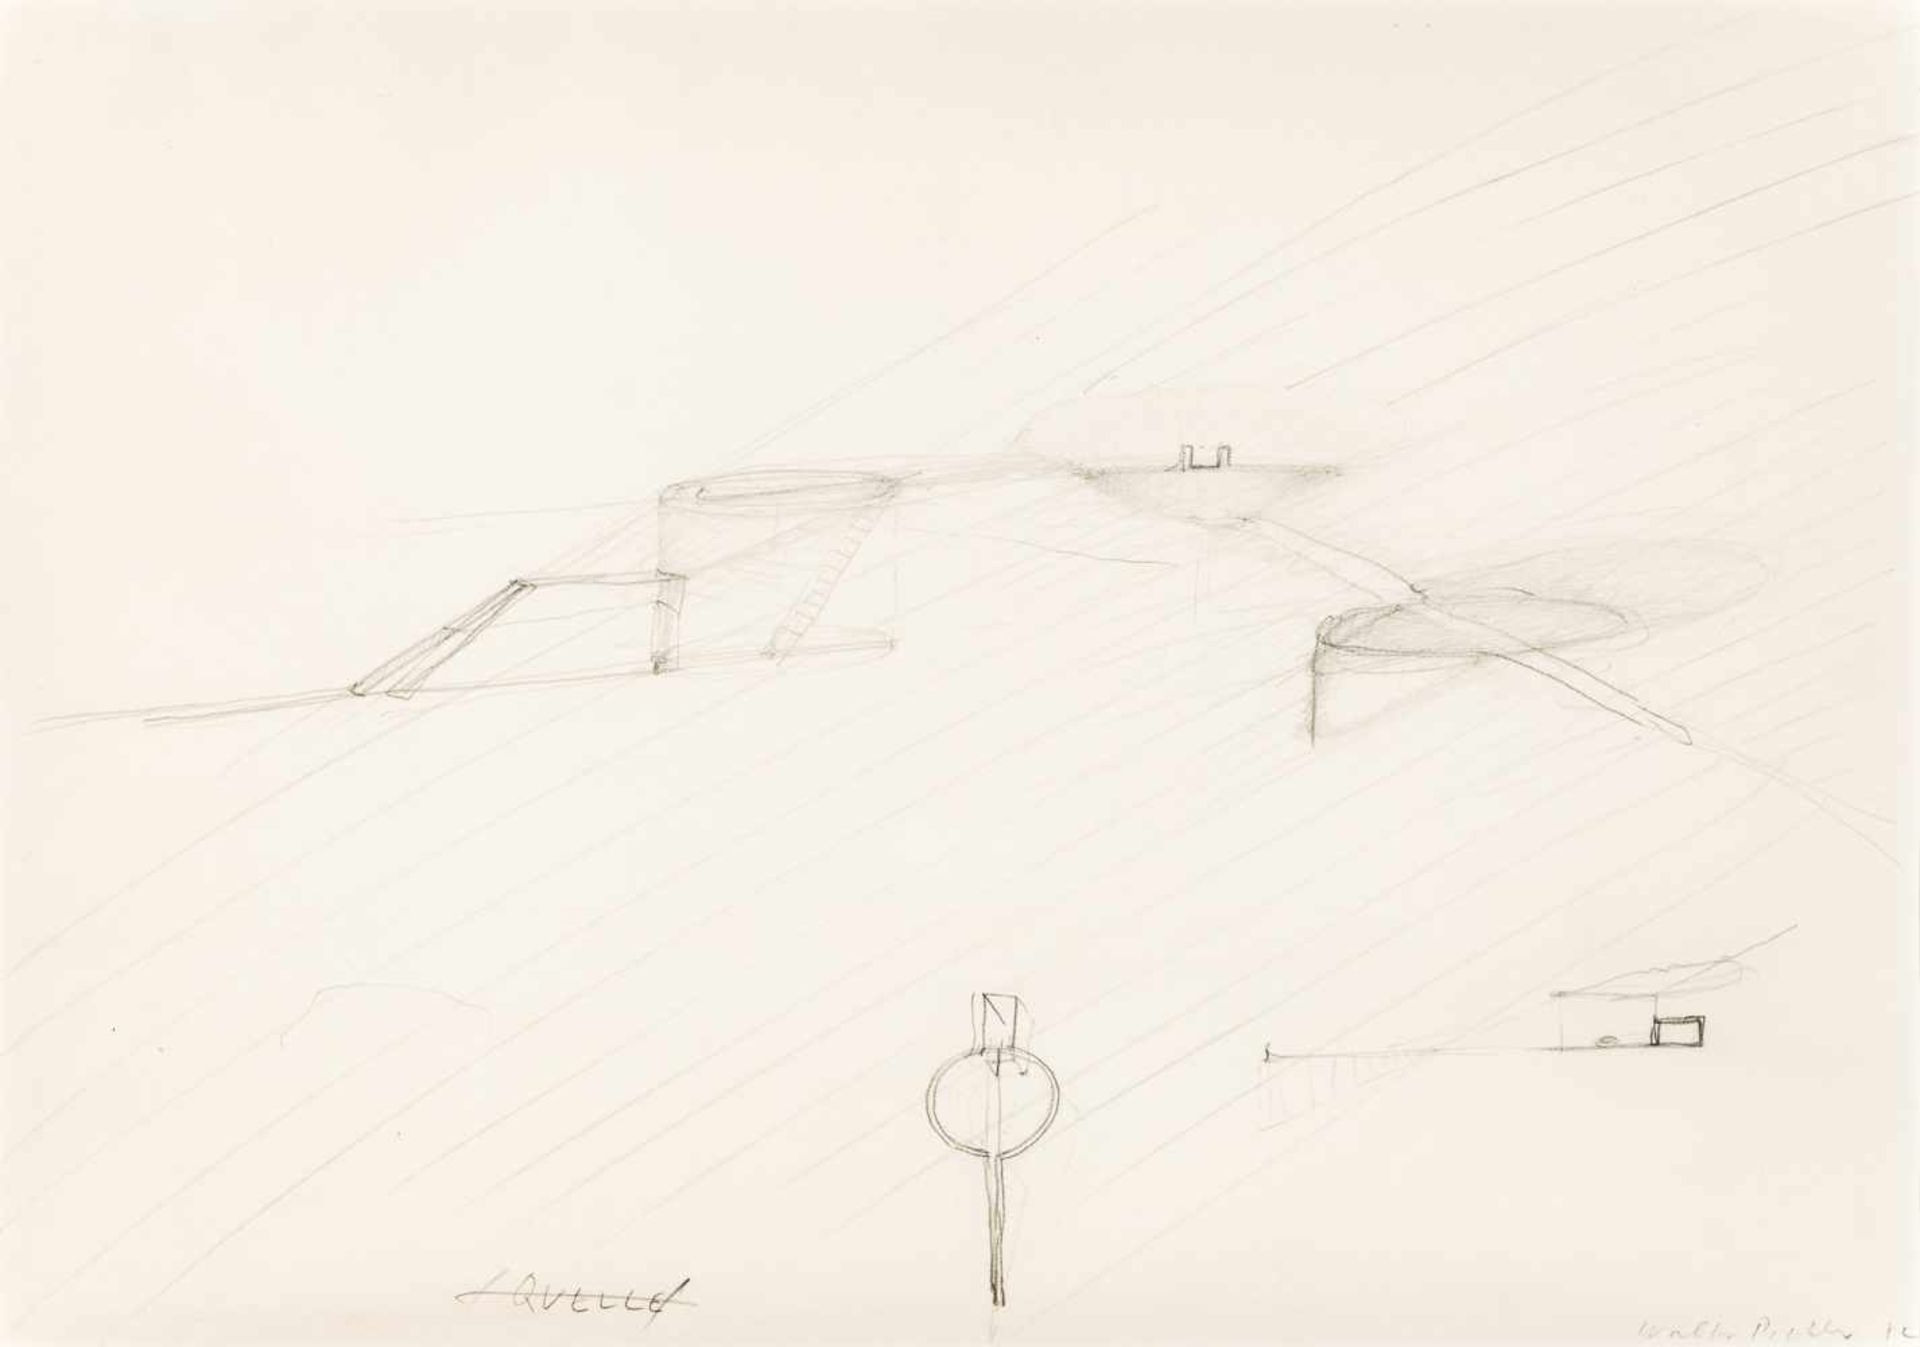 Walter PichlerDeutschnofen 1936 - 2012 WienQUELLEBleistift auf Papier / pencil on paper29 x 41,5